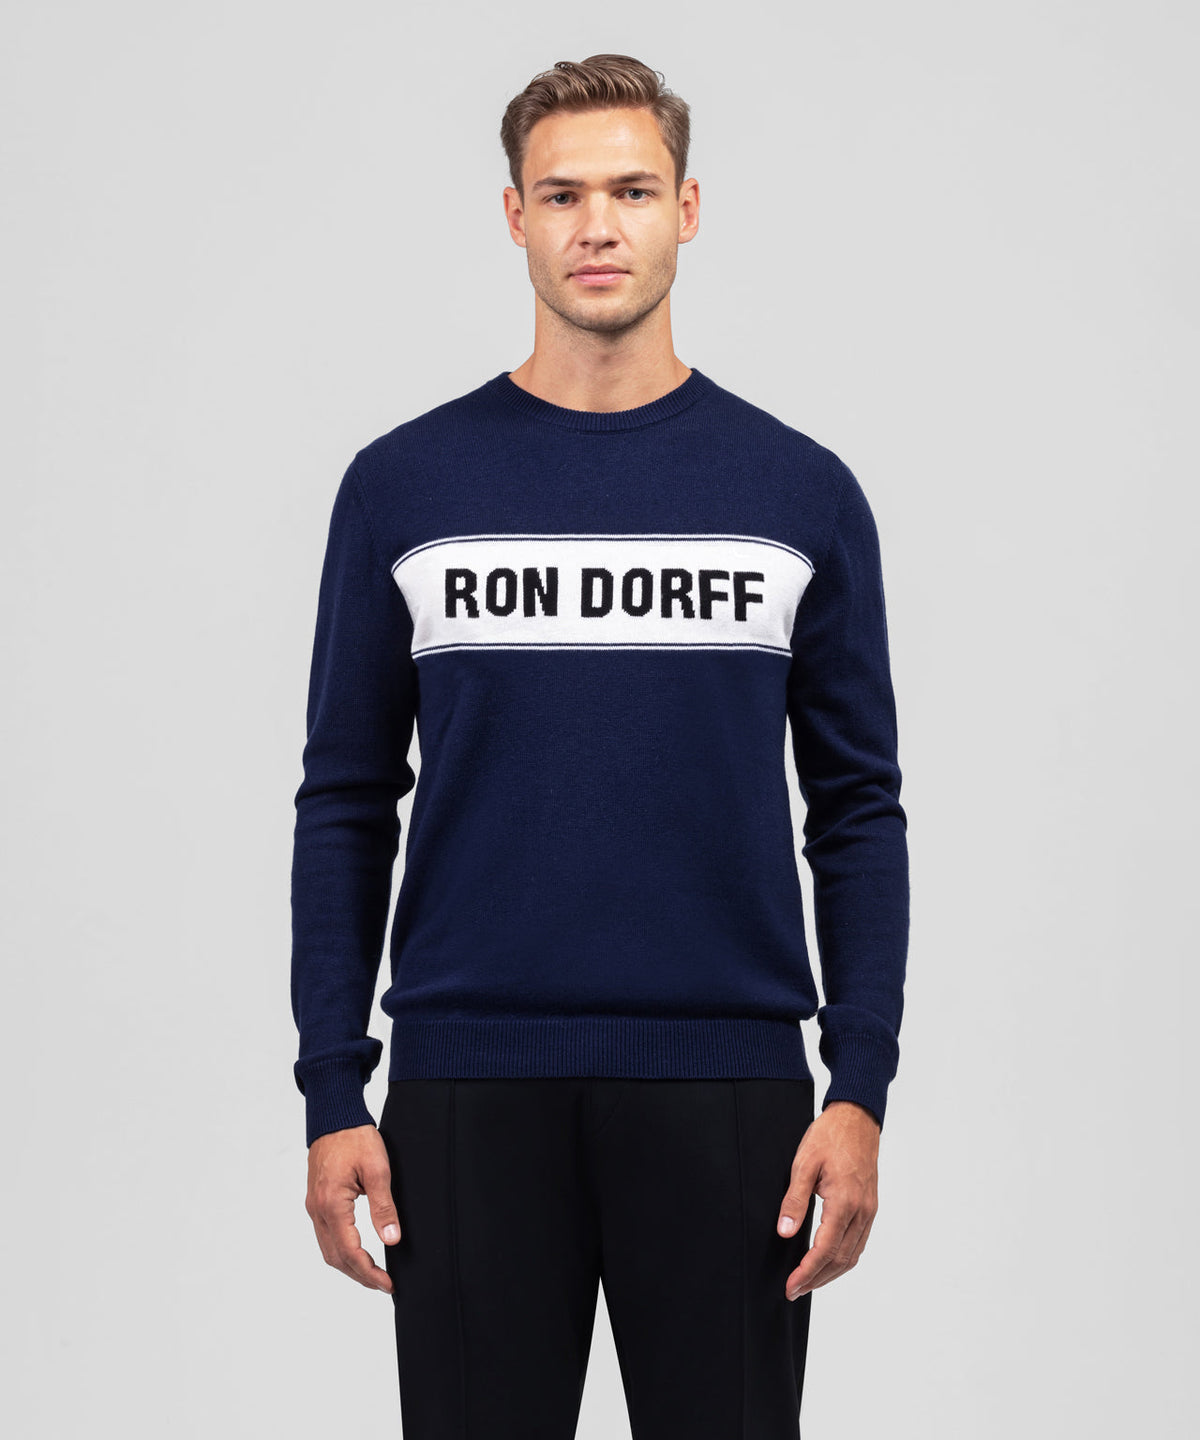 Cotton-Wool RON DORFF Sweater: Navy